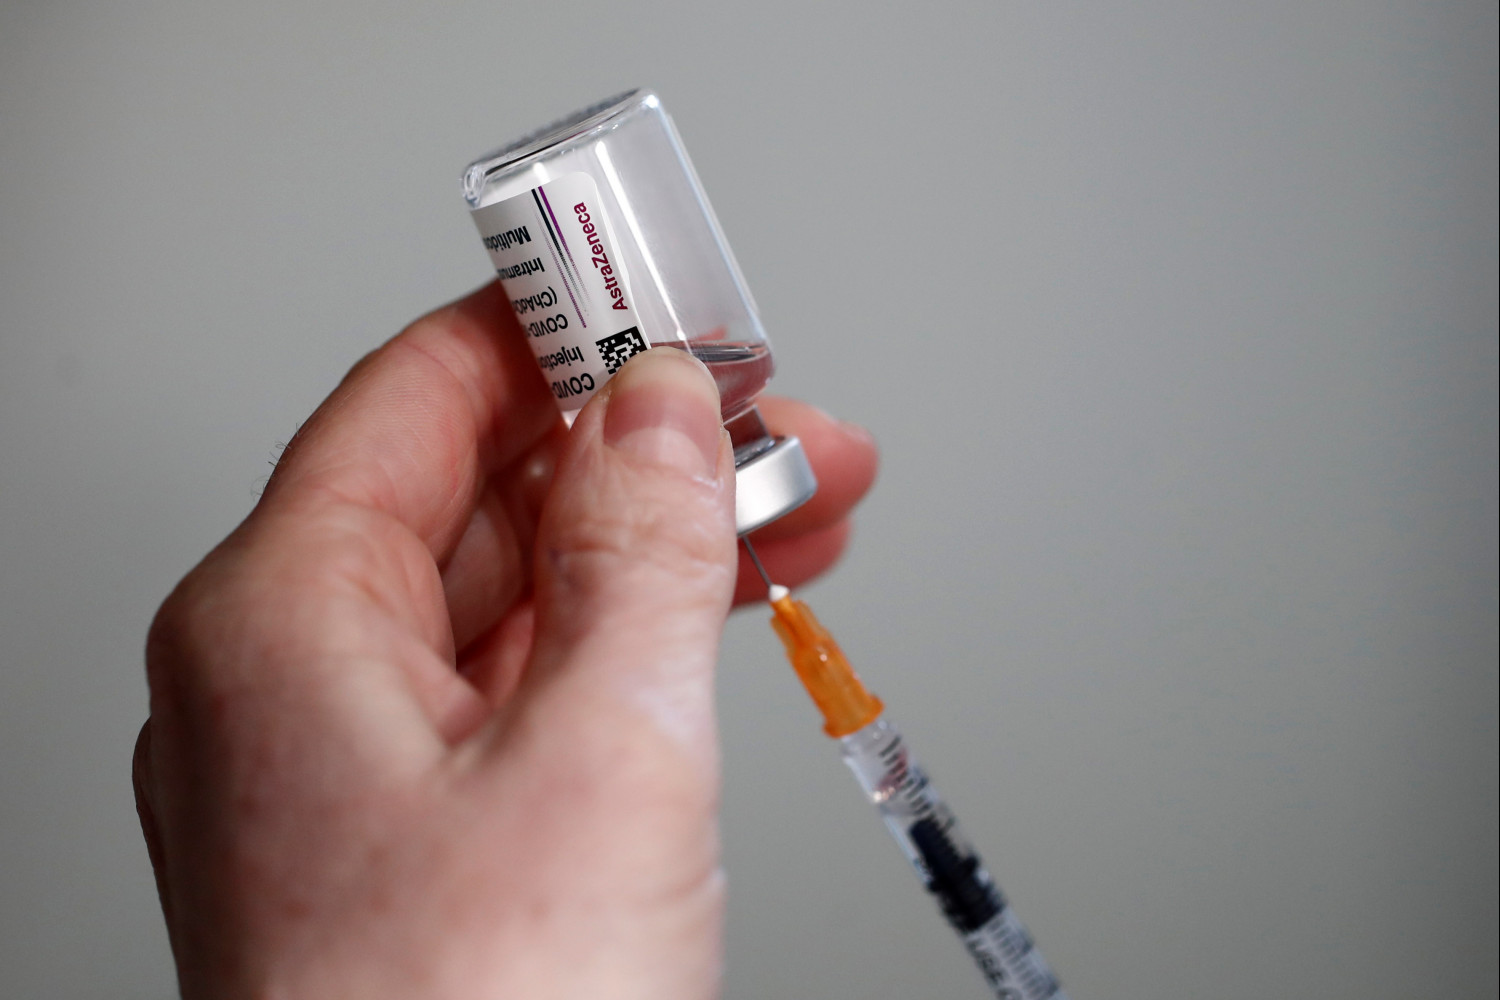 coronavirus reprise des injections du vaccin astrazeneca dans une dizaine de pays 